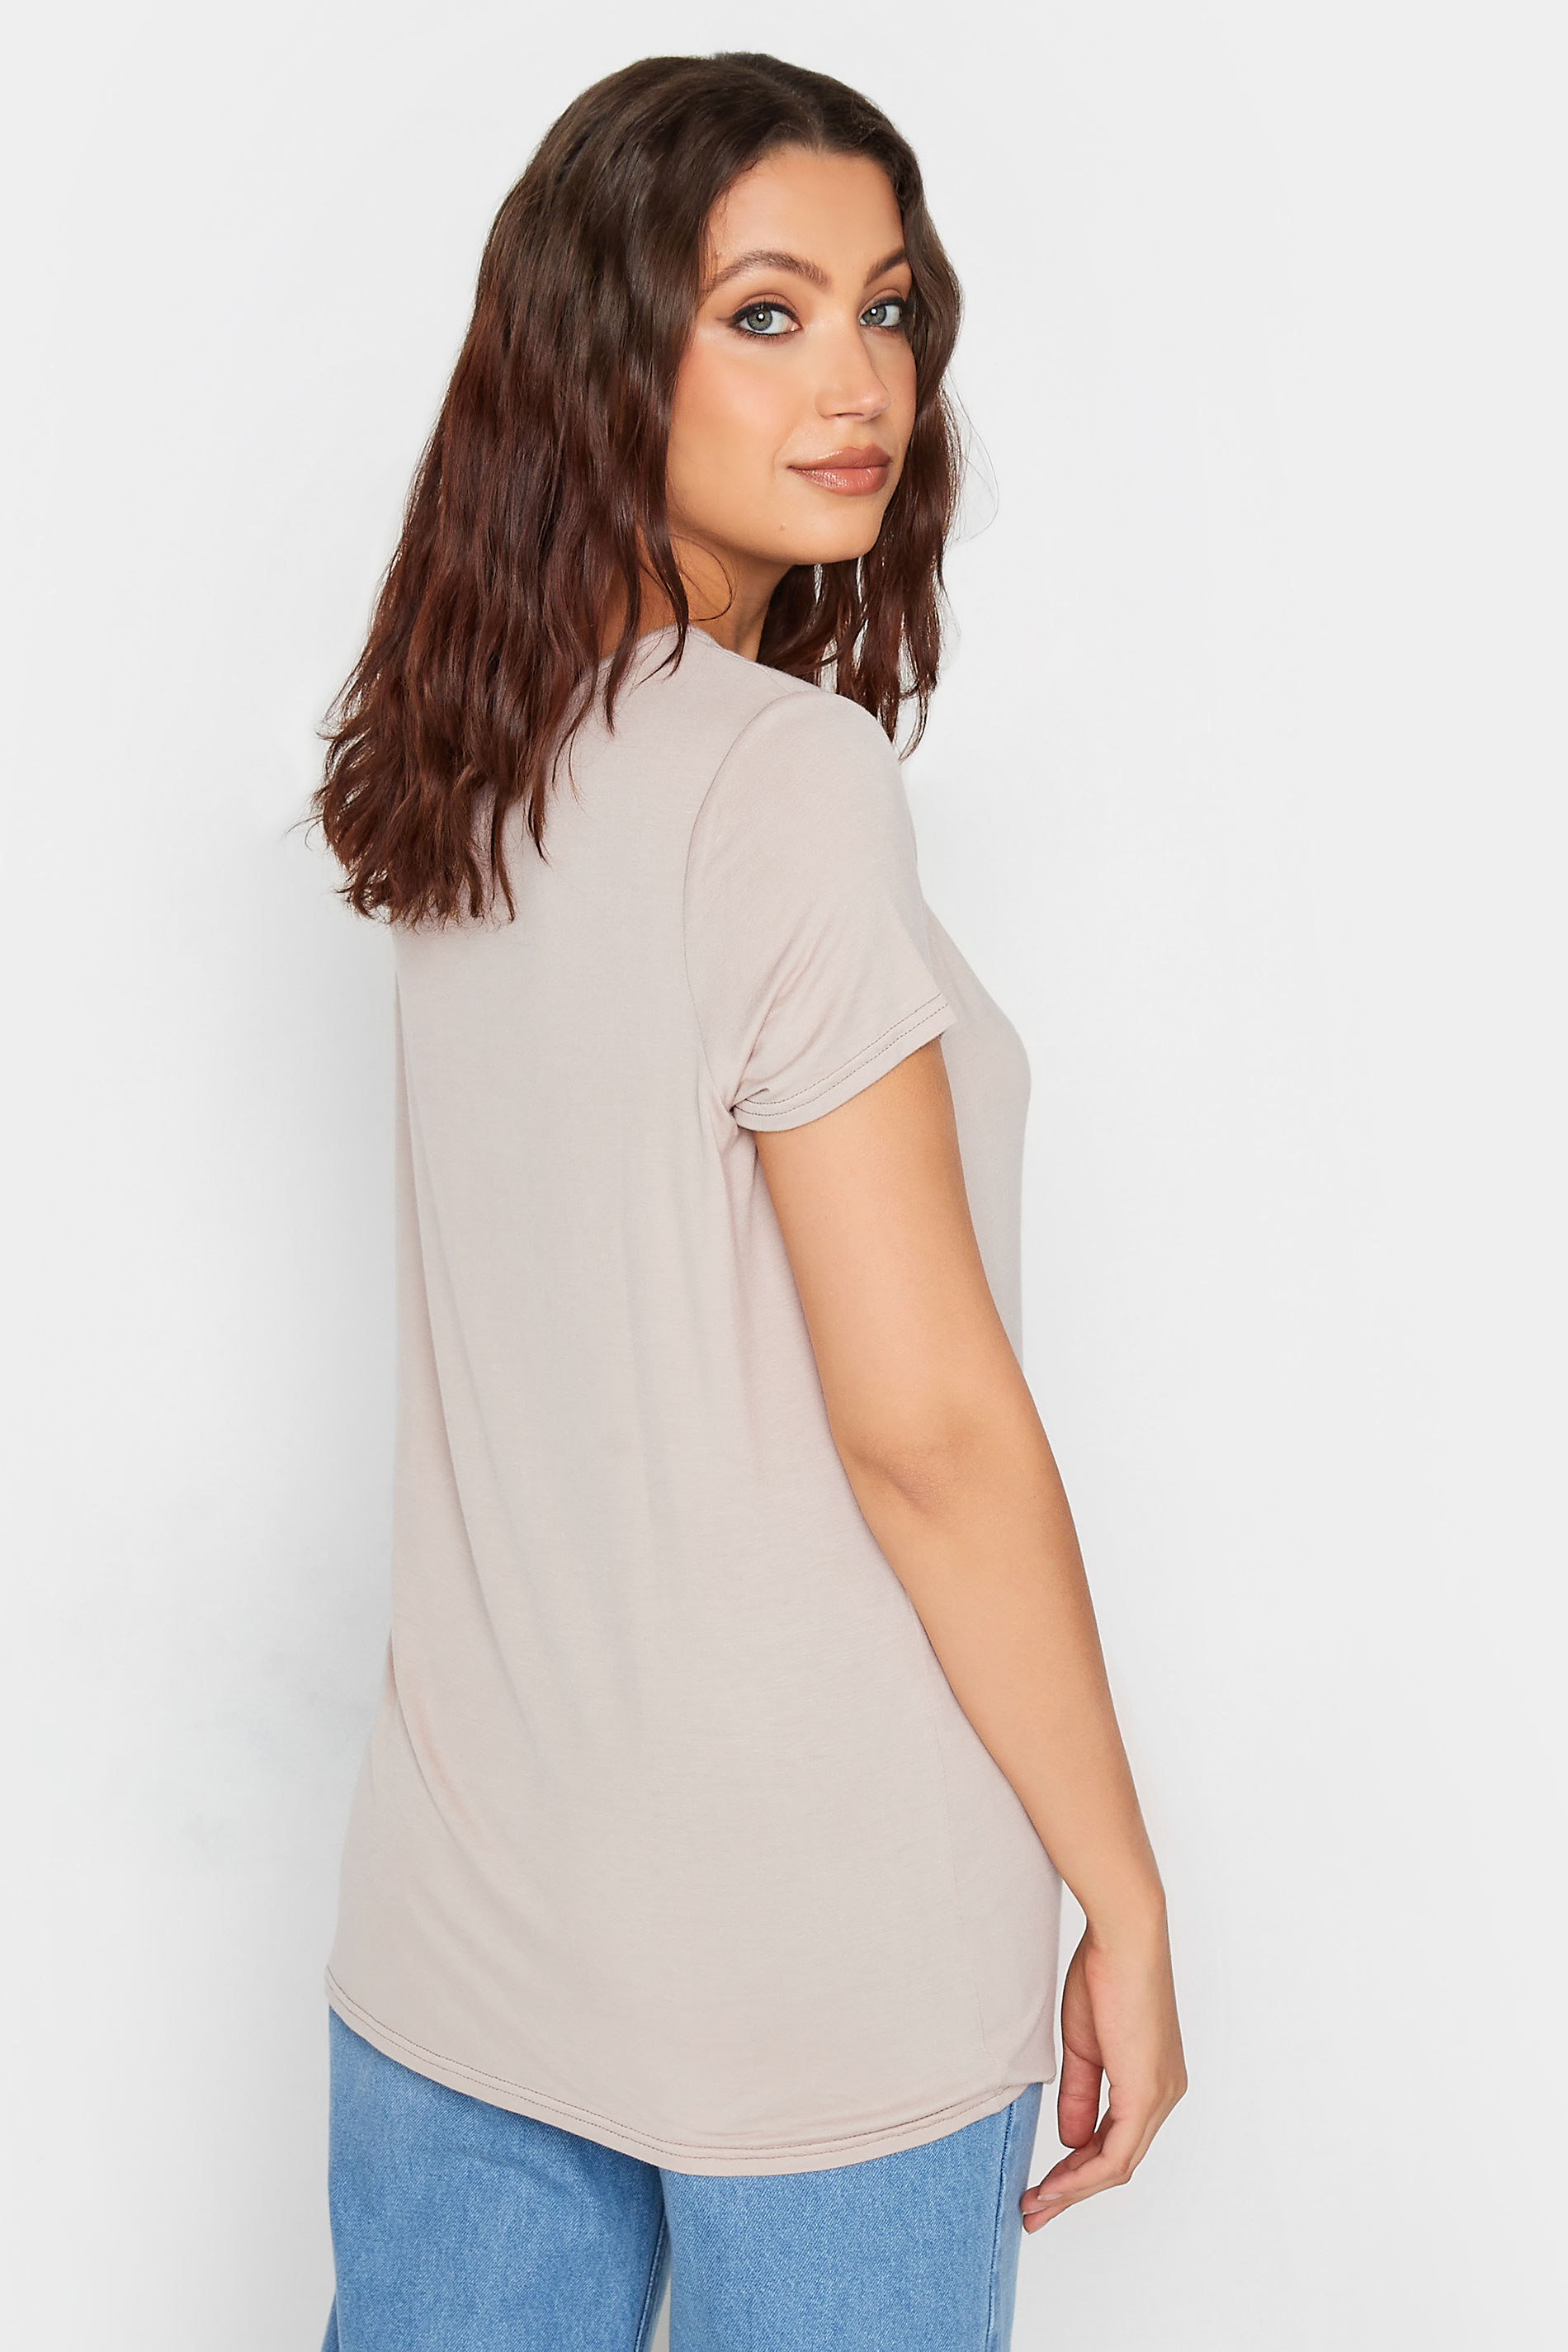 LTS Tall Women's Cream V-Neck T-Shirt | Long Tall Sally 3